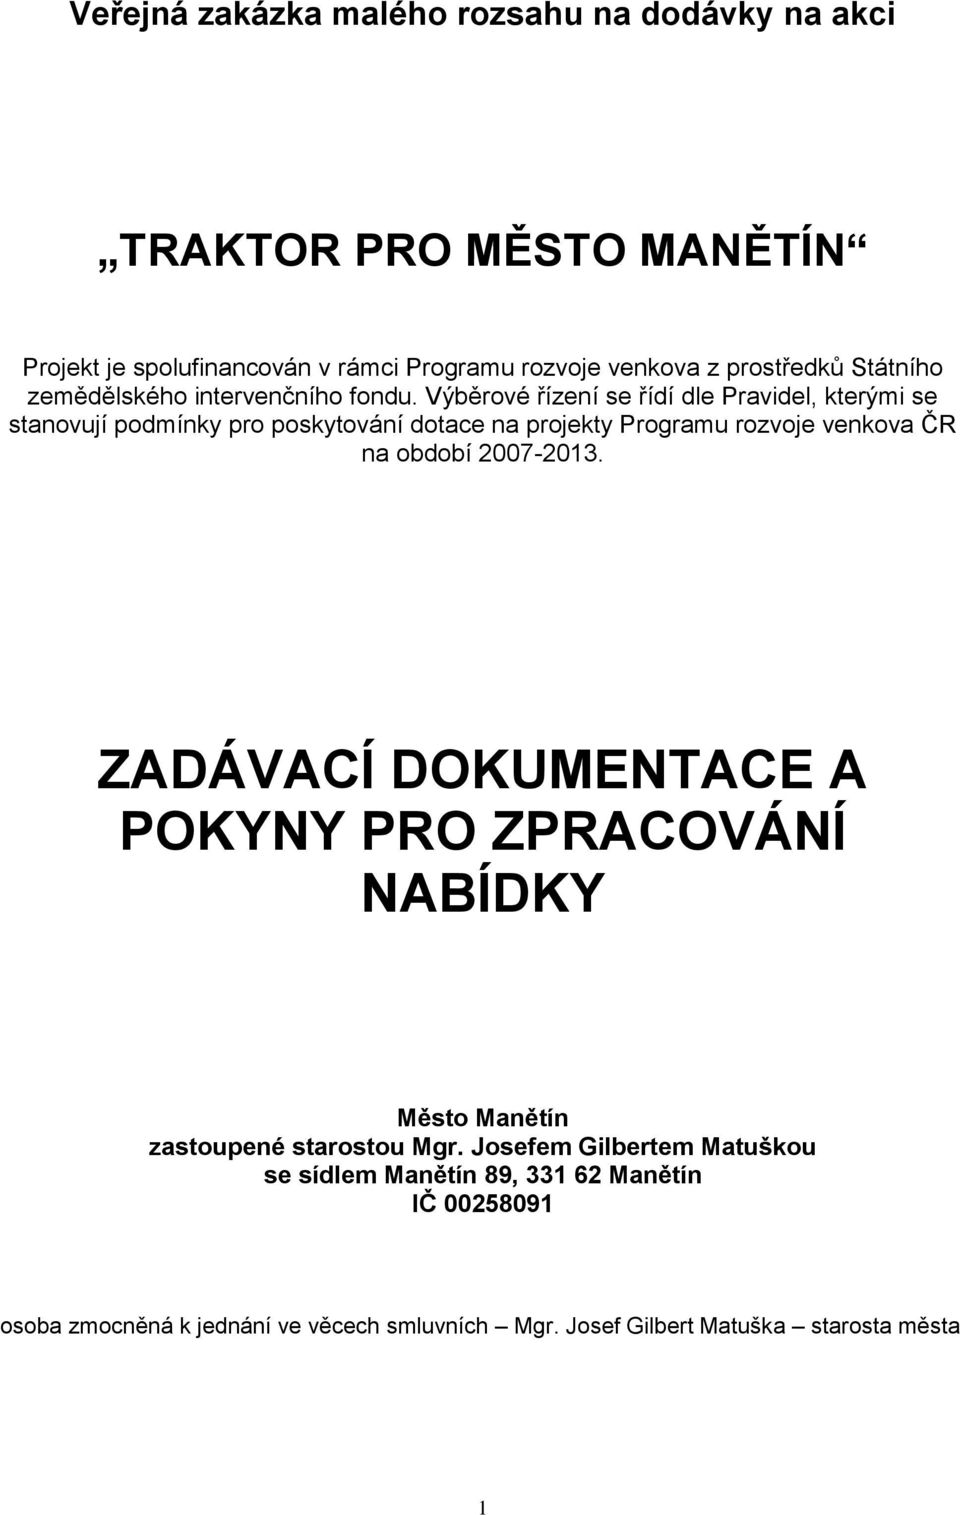 Výběrové řízení se řídí dle Pravidel, kterými se stanovují podmínky pro poskytování dotace na projekty Programu rozvoje venkova ČR na období 2007-2013.